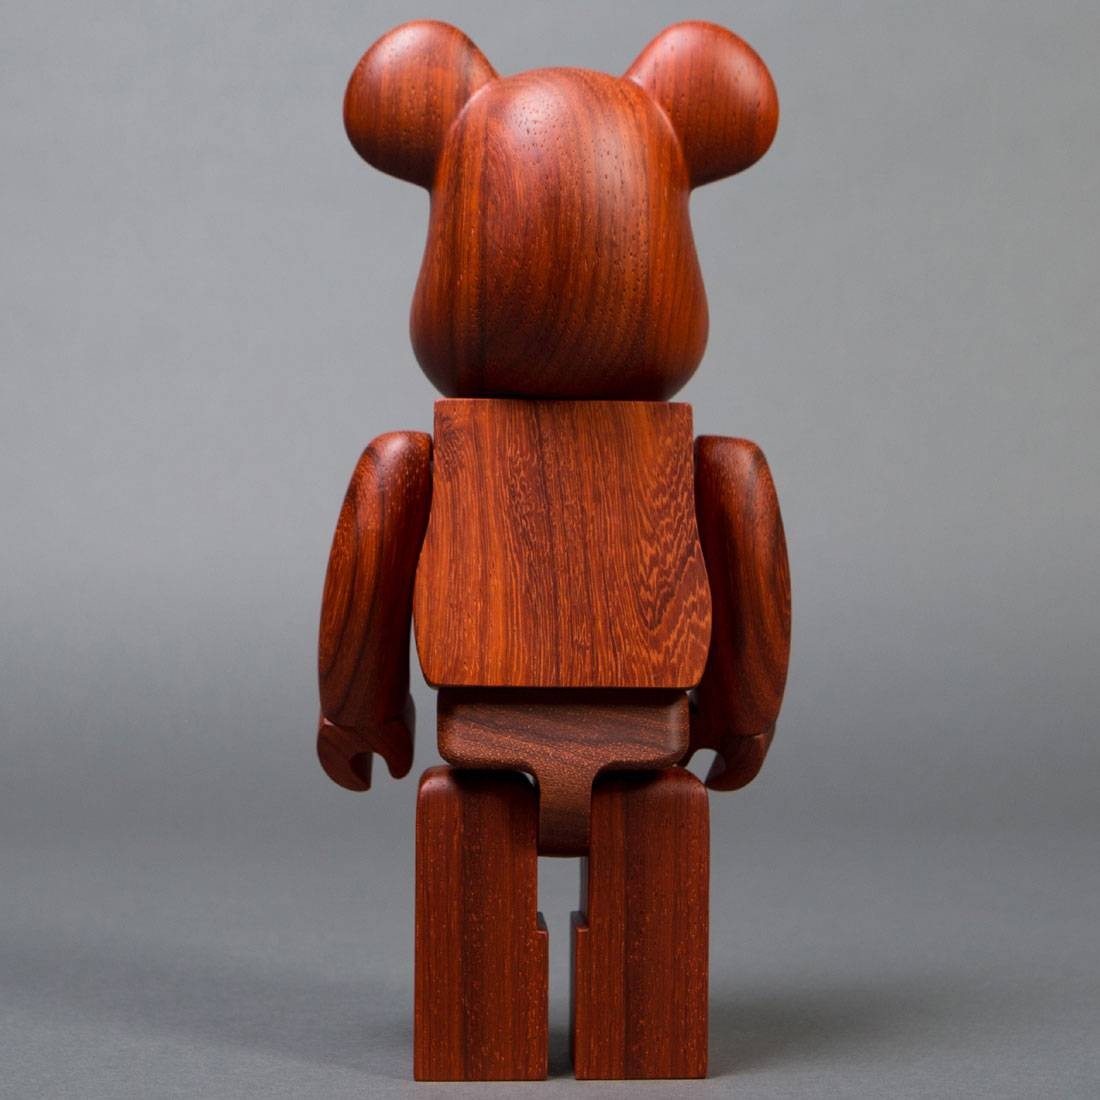 Medicom x Karimoku Padauk 400% Wooden Bearbrick Figure (brown)